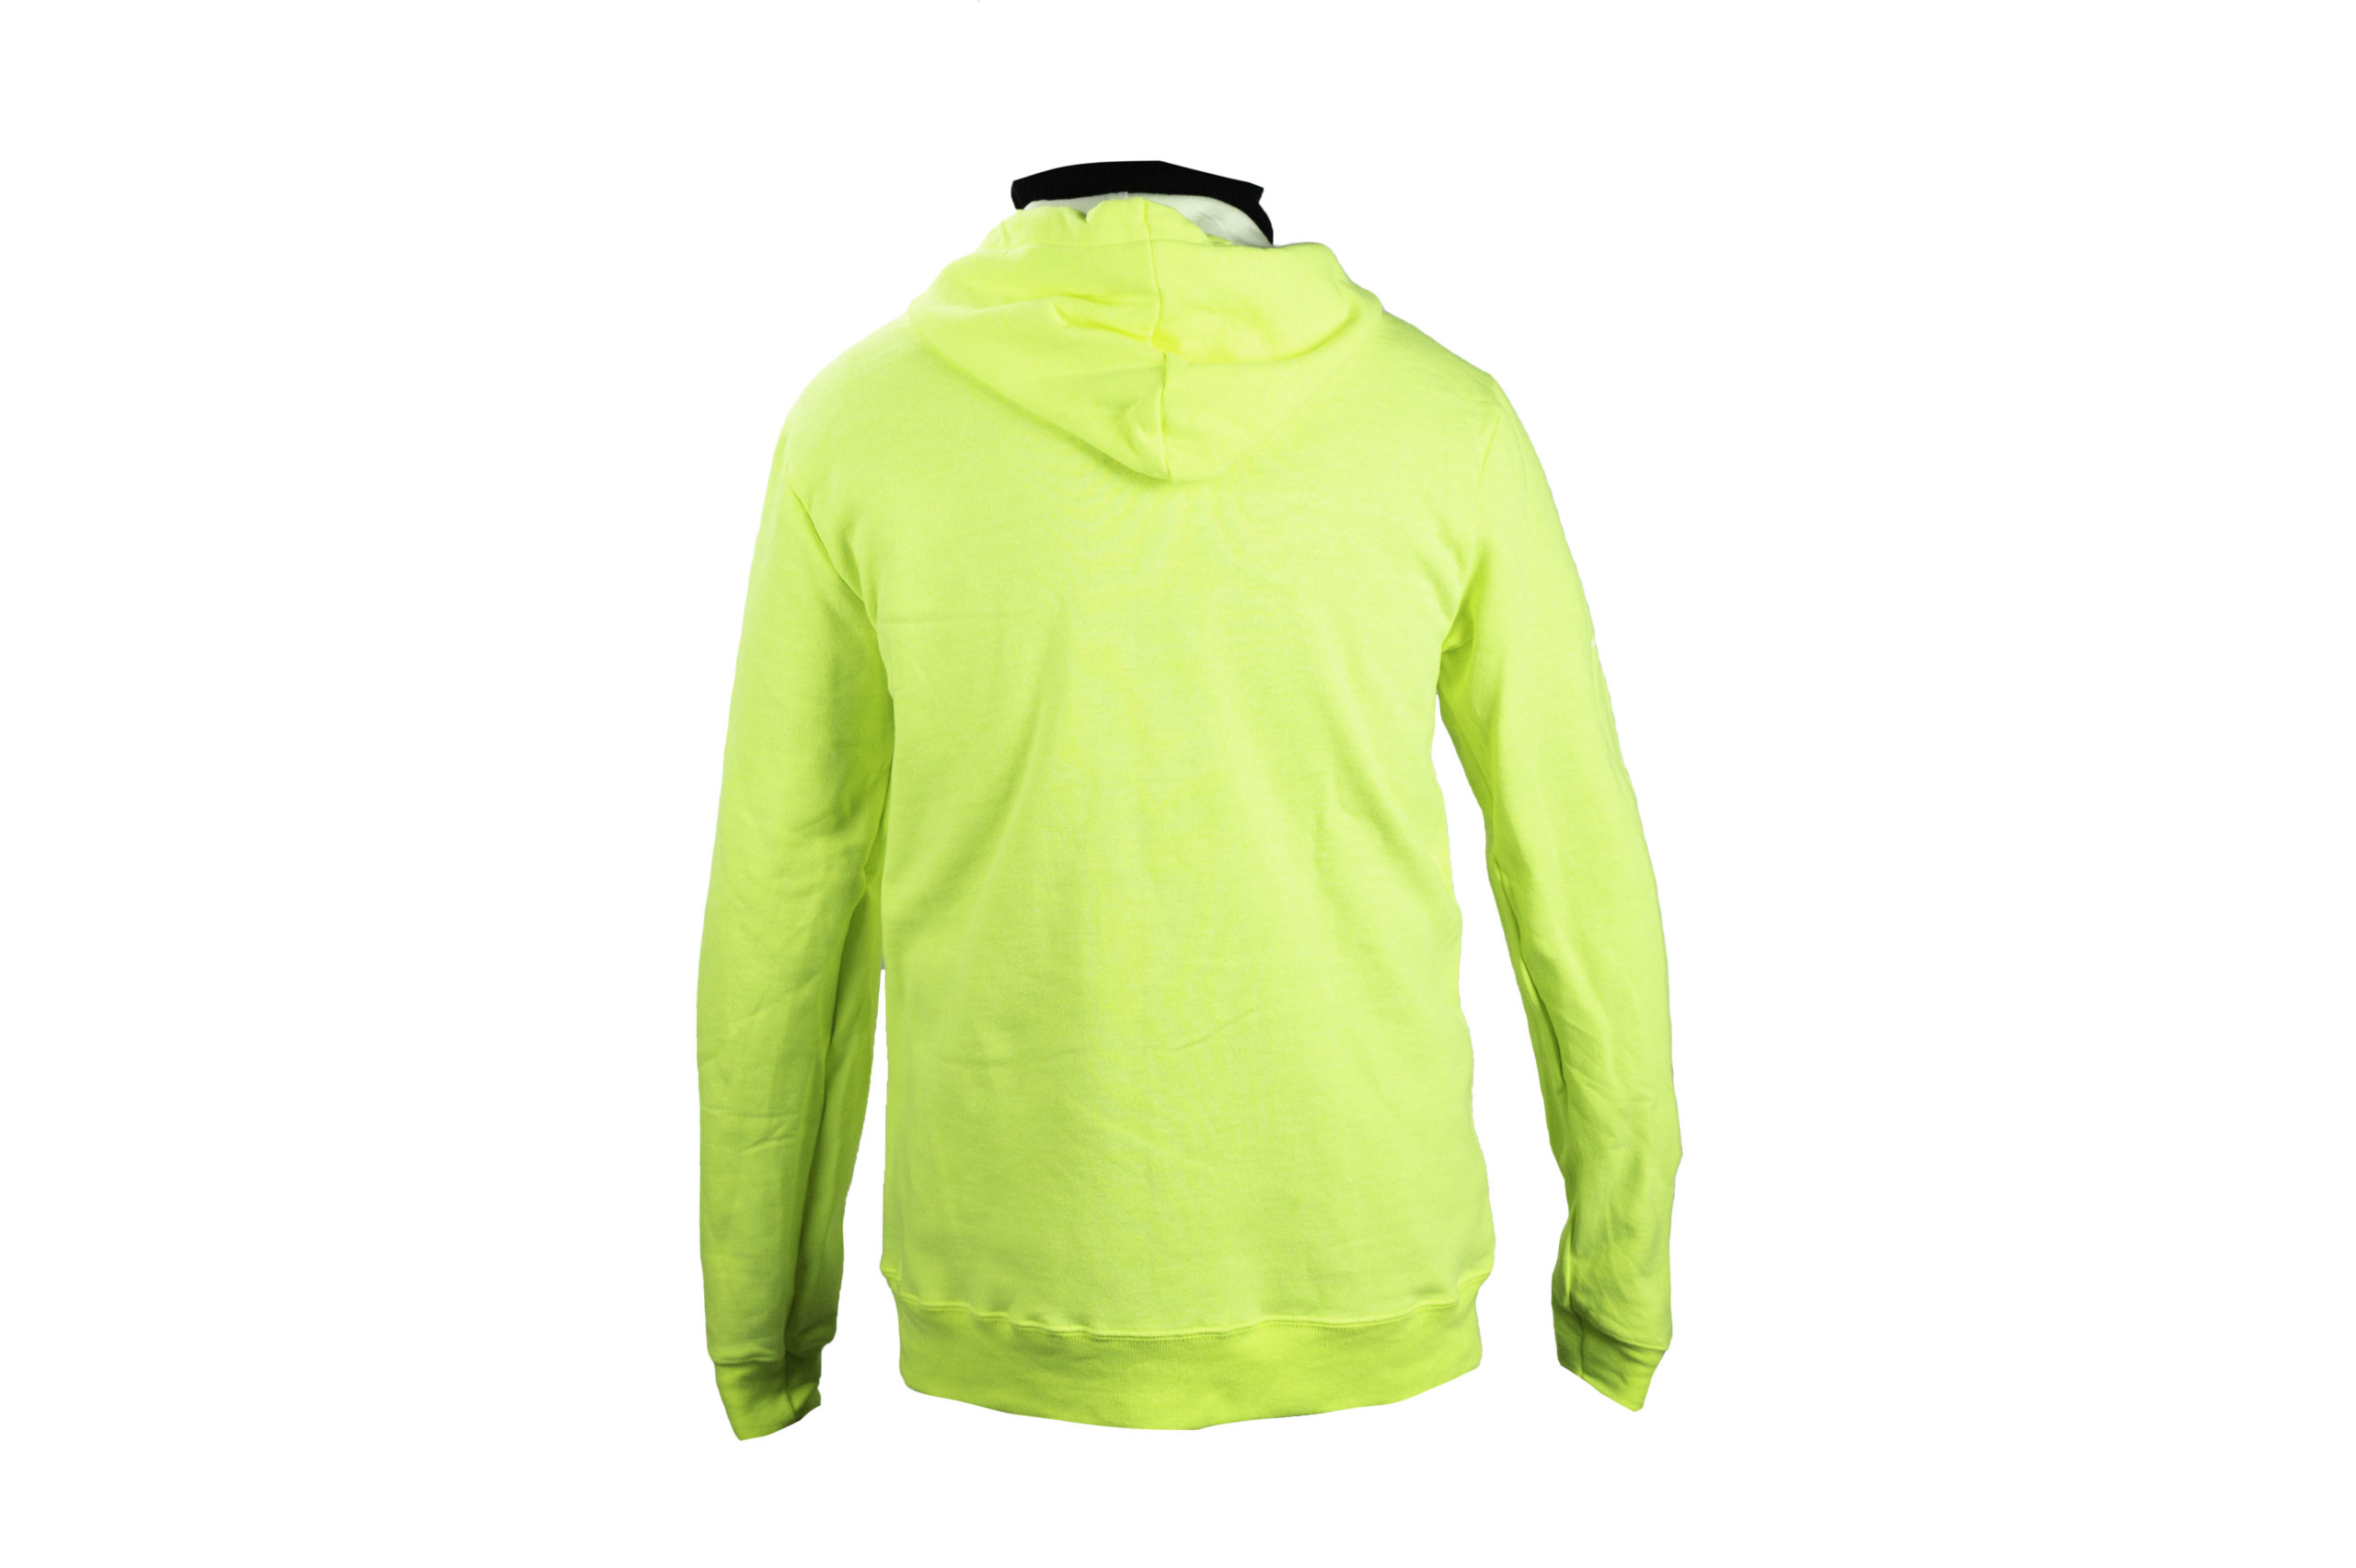 Adidas Zip-up Hoodie Neon Yellow Sweatshirt Fleece sz Medium M Green Stripe